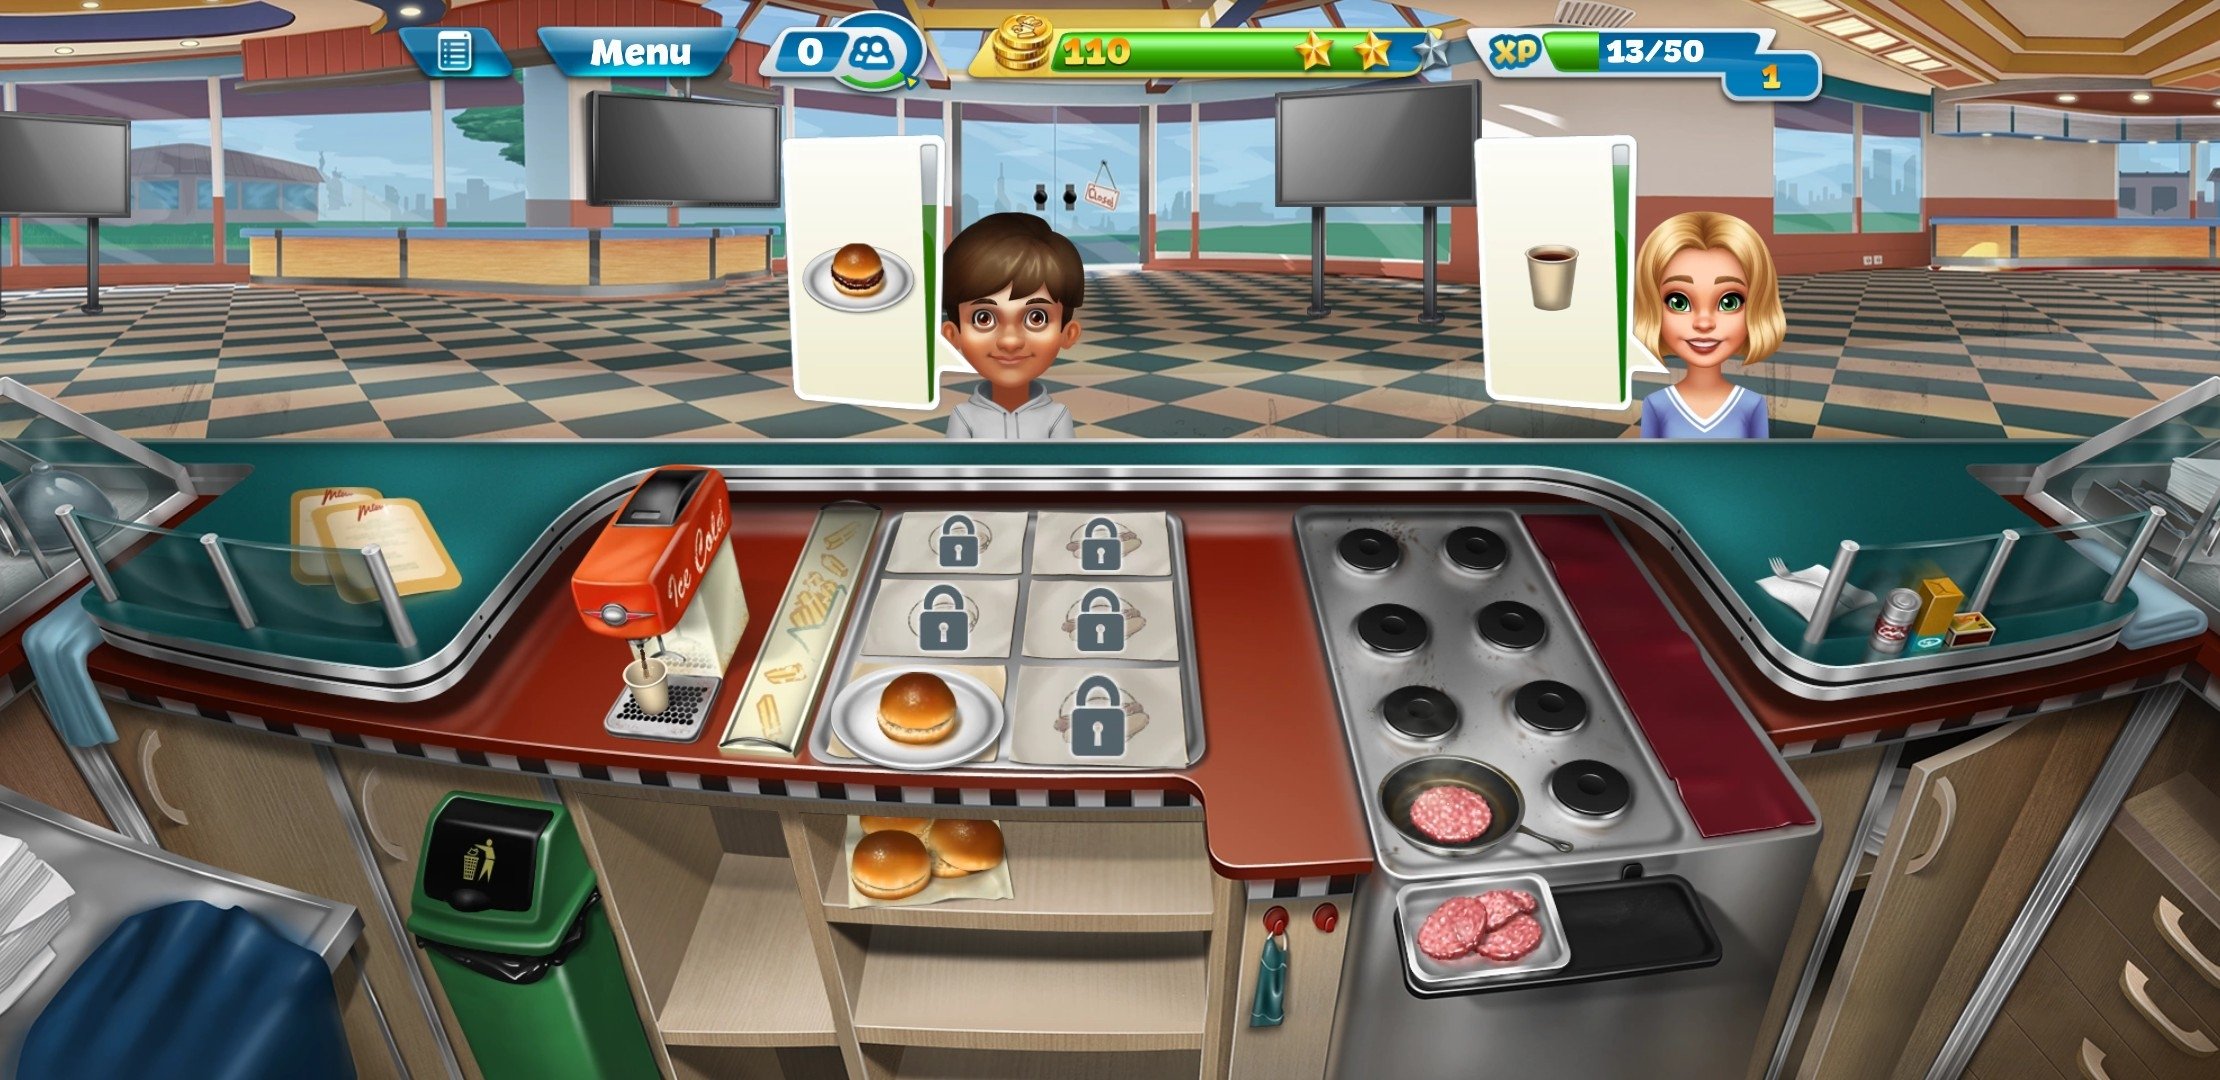 Download do APK de Jogos de Cozinha! para Android